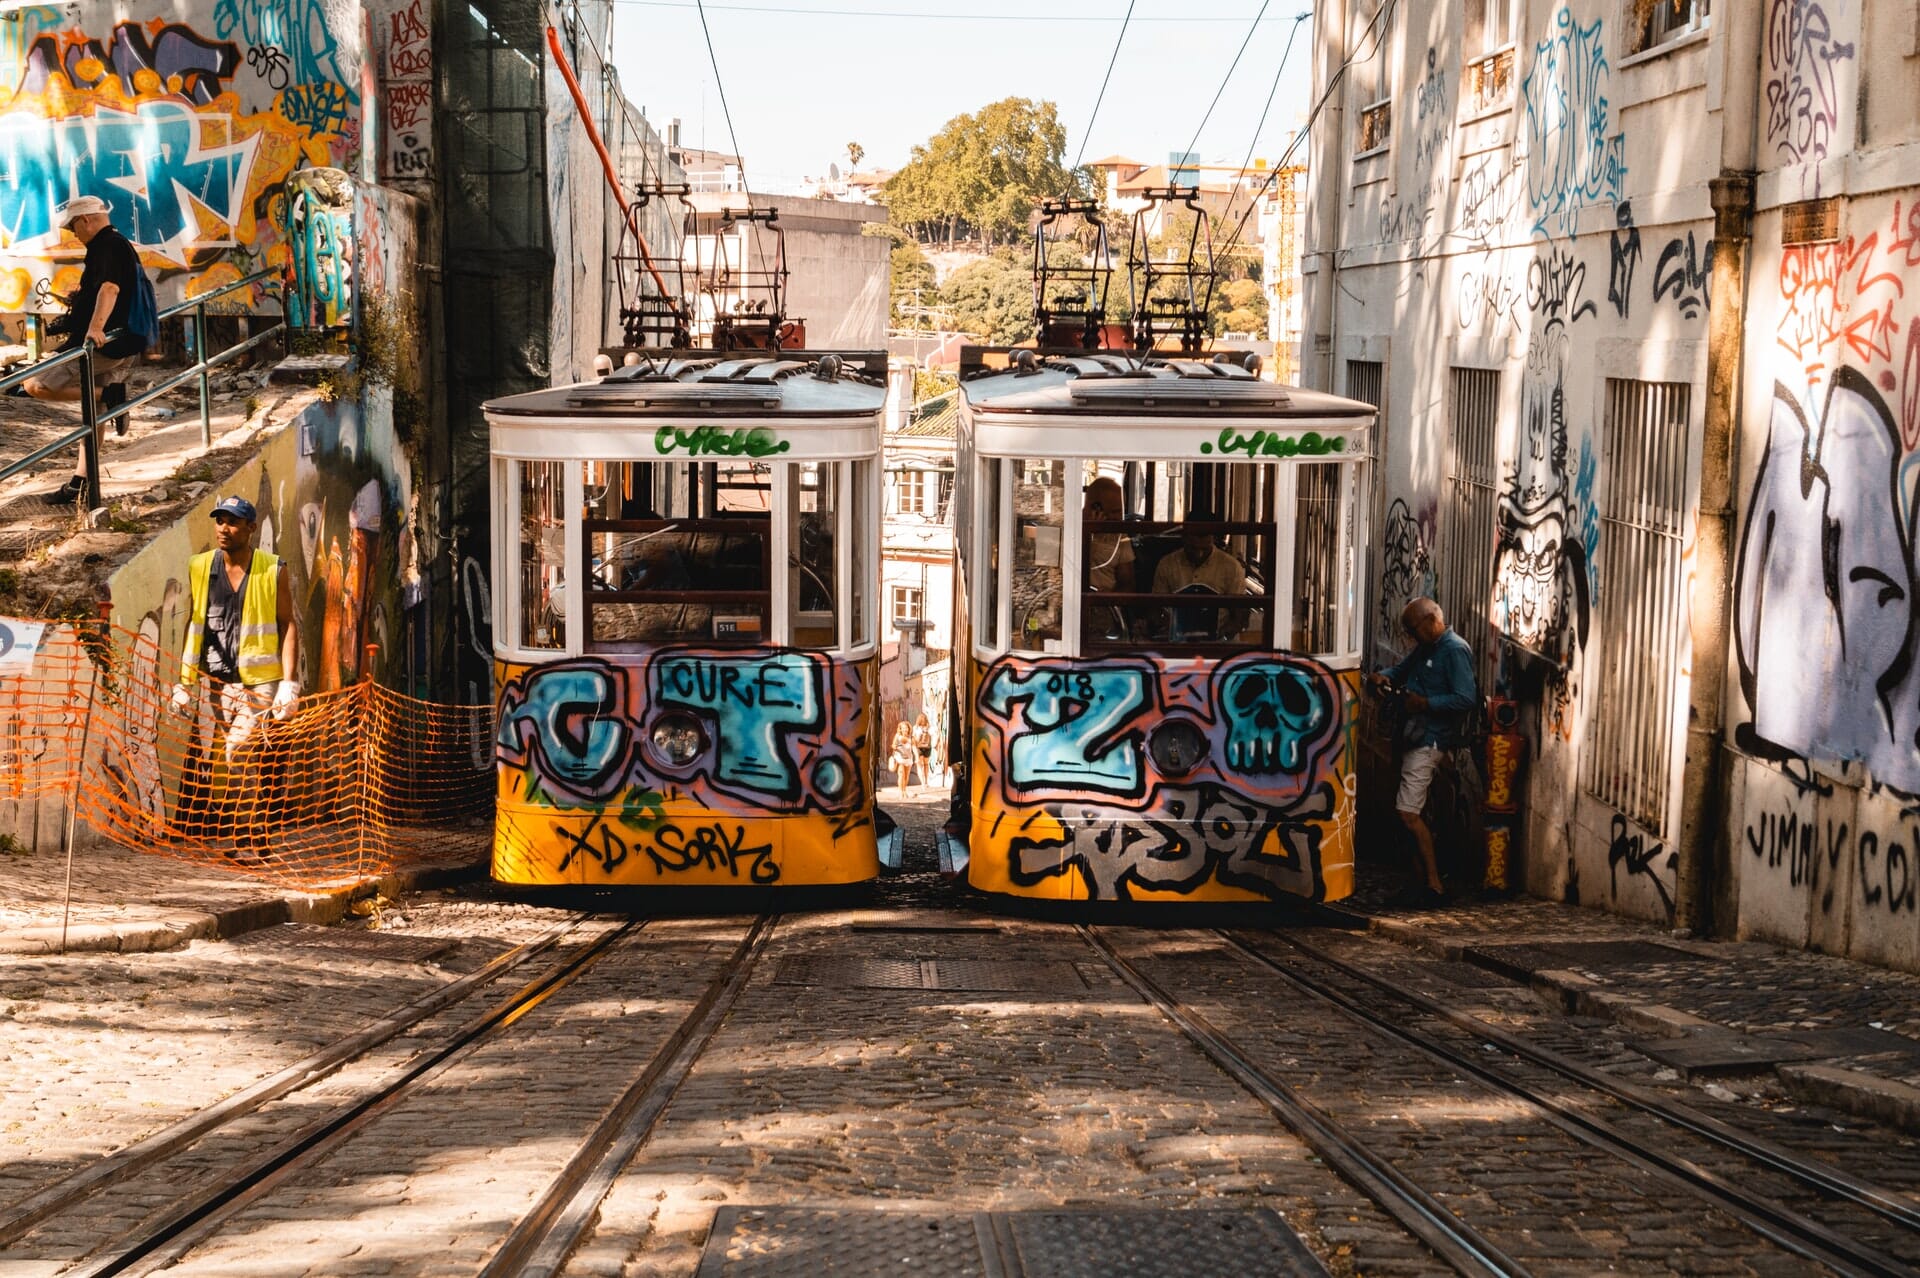 Graffiti covered trams in street scene.